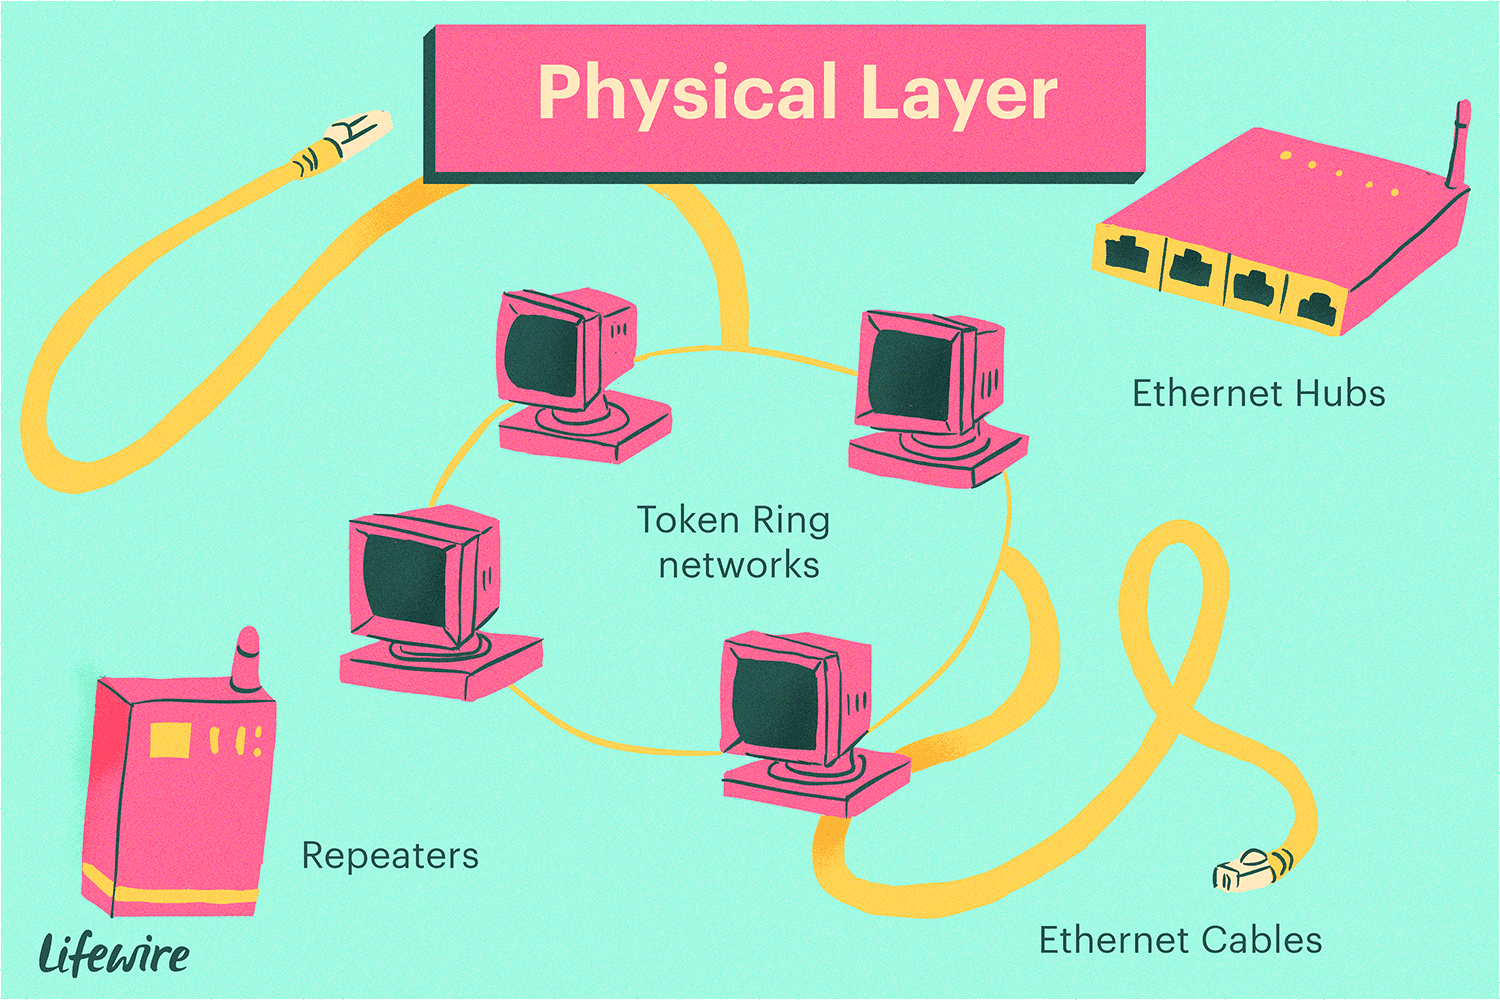 Иллюстрация физического уровня, показывающая повторители, кабели Ethernet и концентраторы, а также сети Token Ring